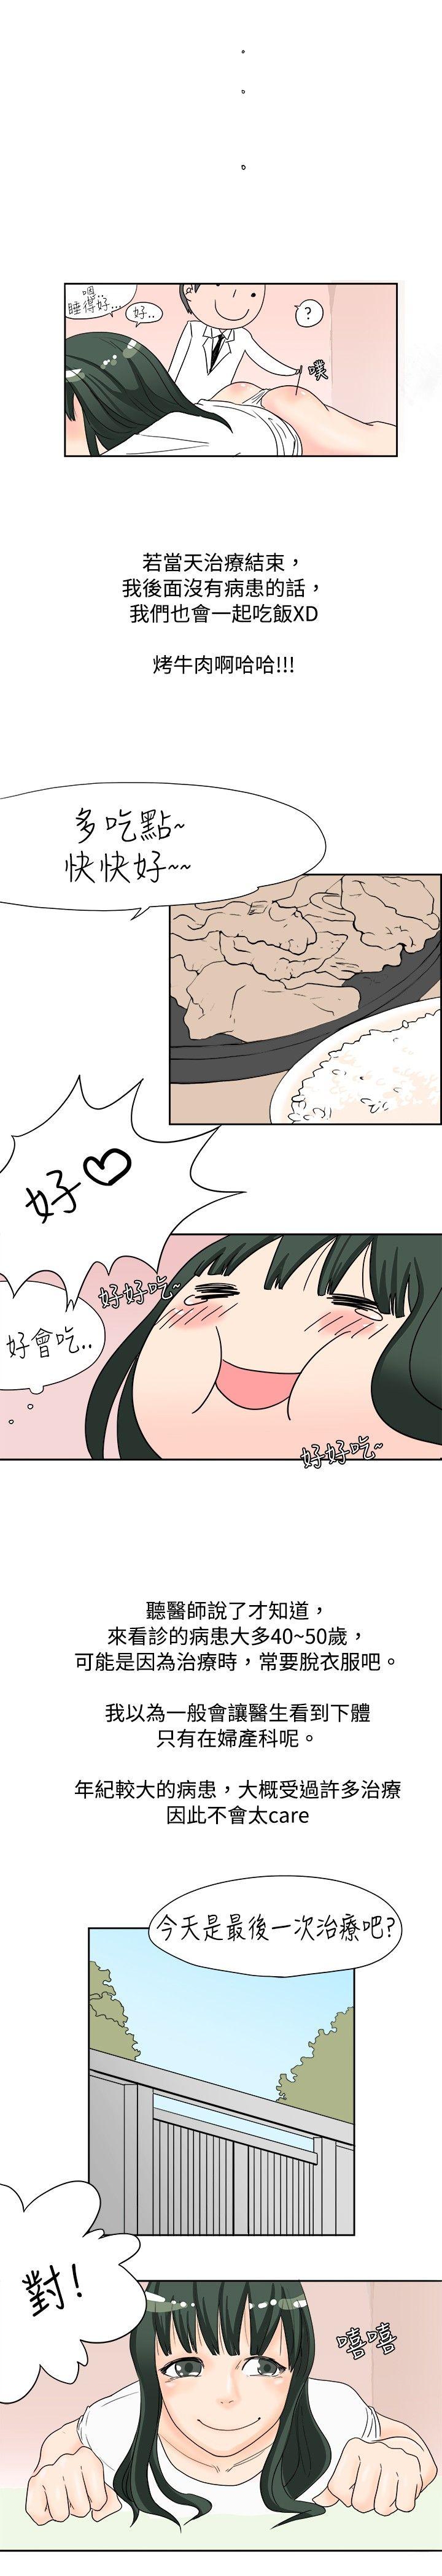 韩国污漫画 秘密Story 去针灸的色瞇瞇事件(下) 7